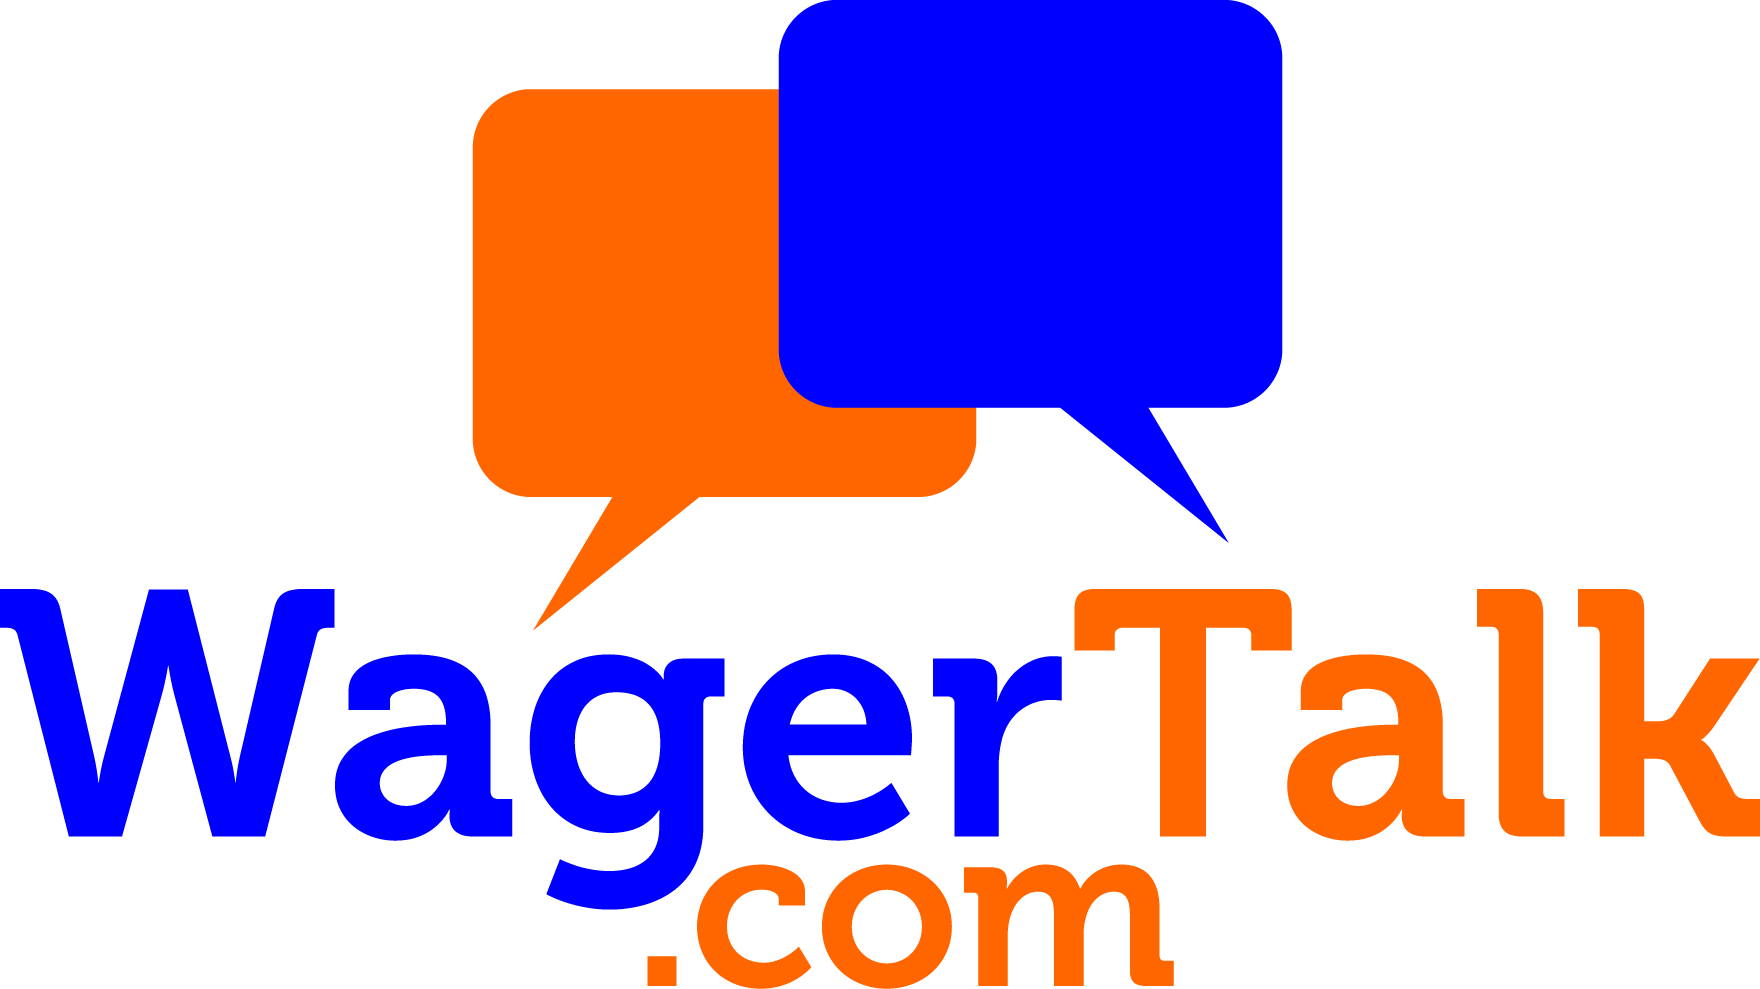 wager talk.com